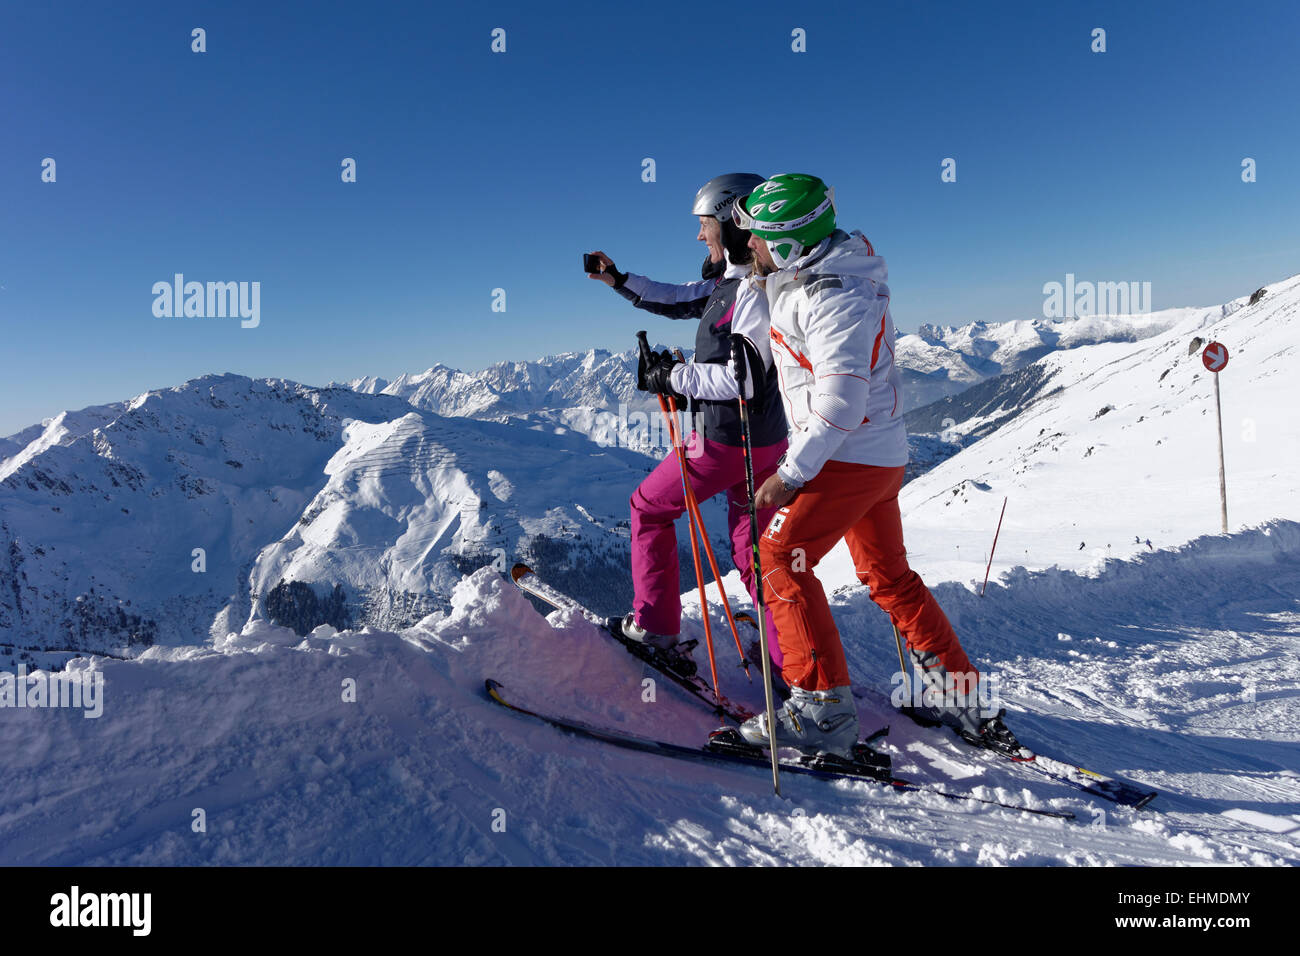 Skiers, couple taking a selfie, Hochfügen in Zillertal valley, Tyrol, Austria Stock Photo